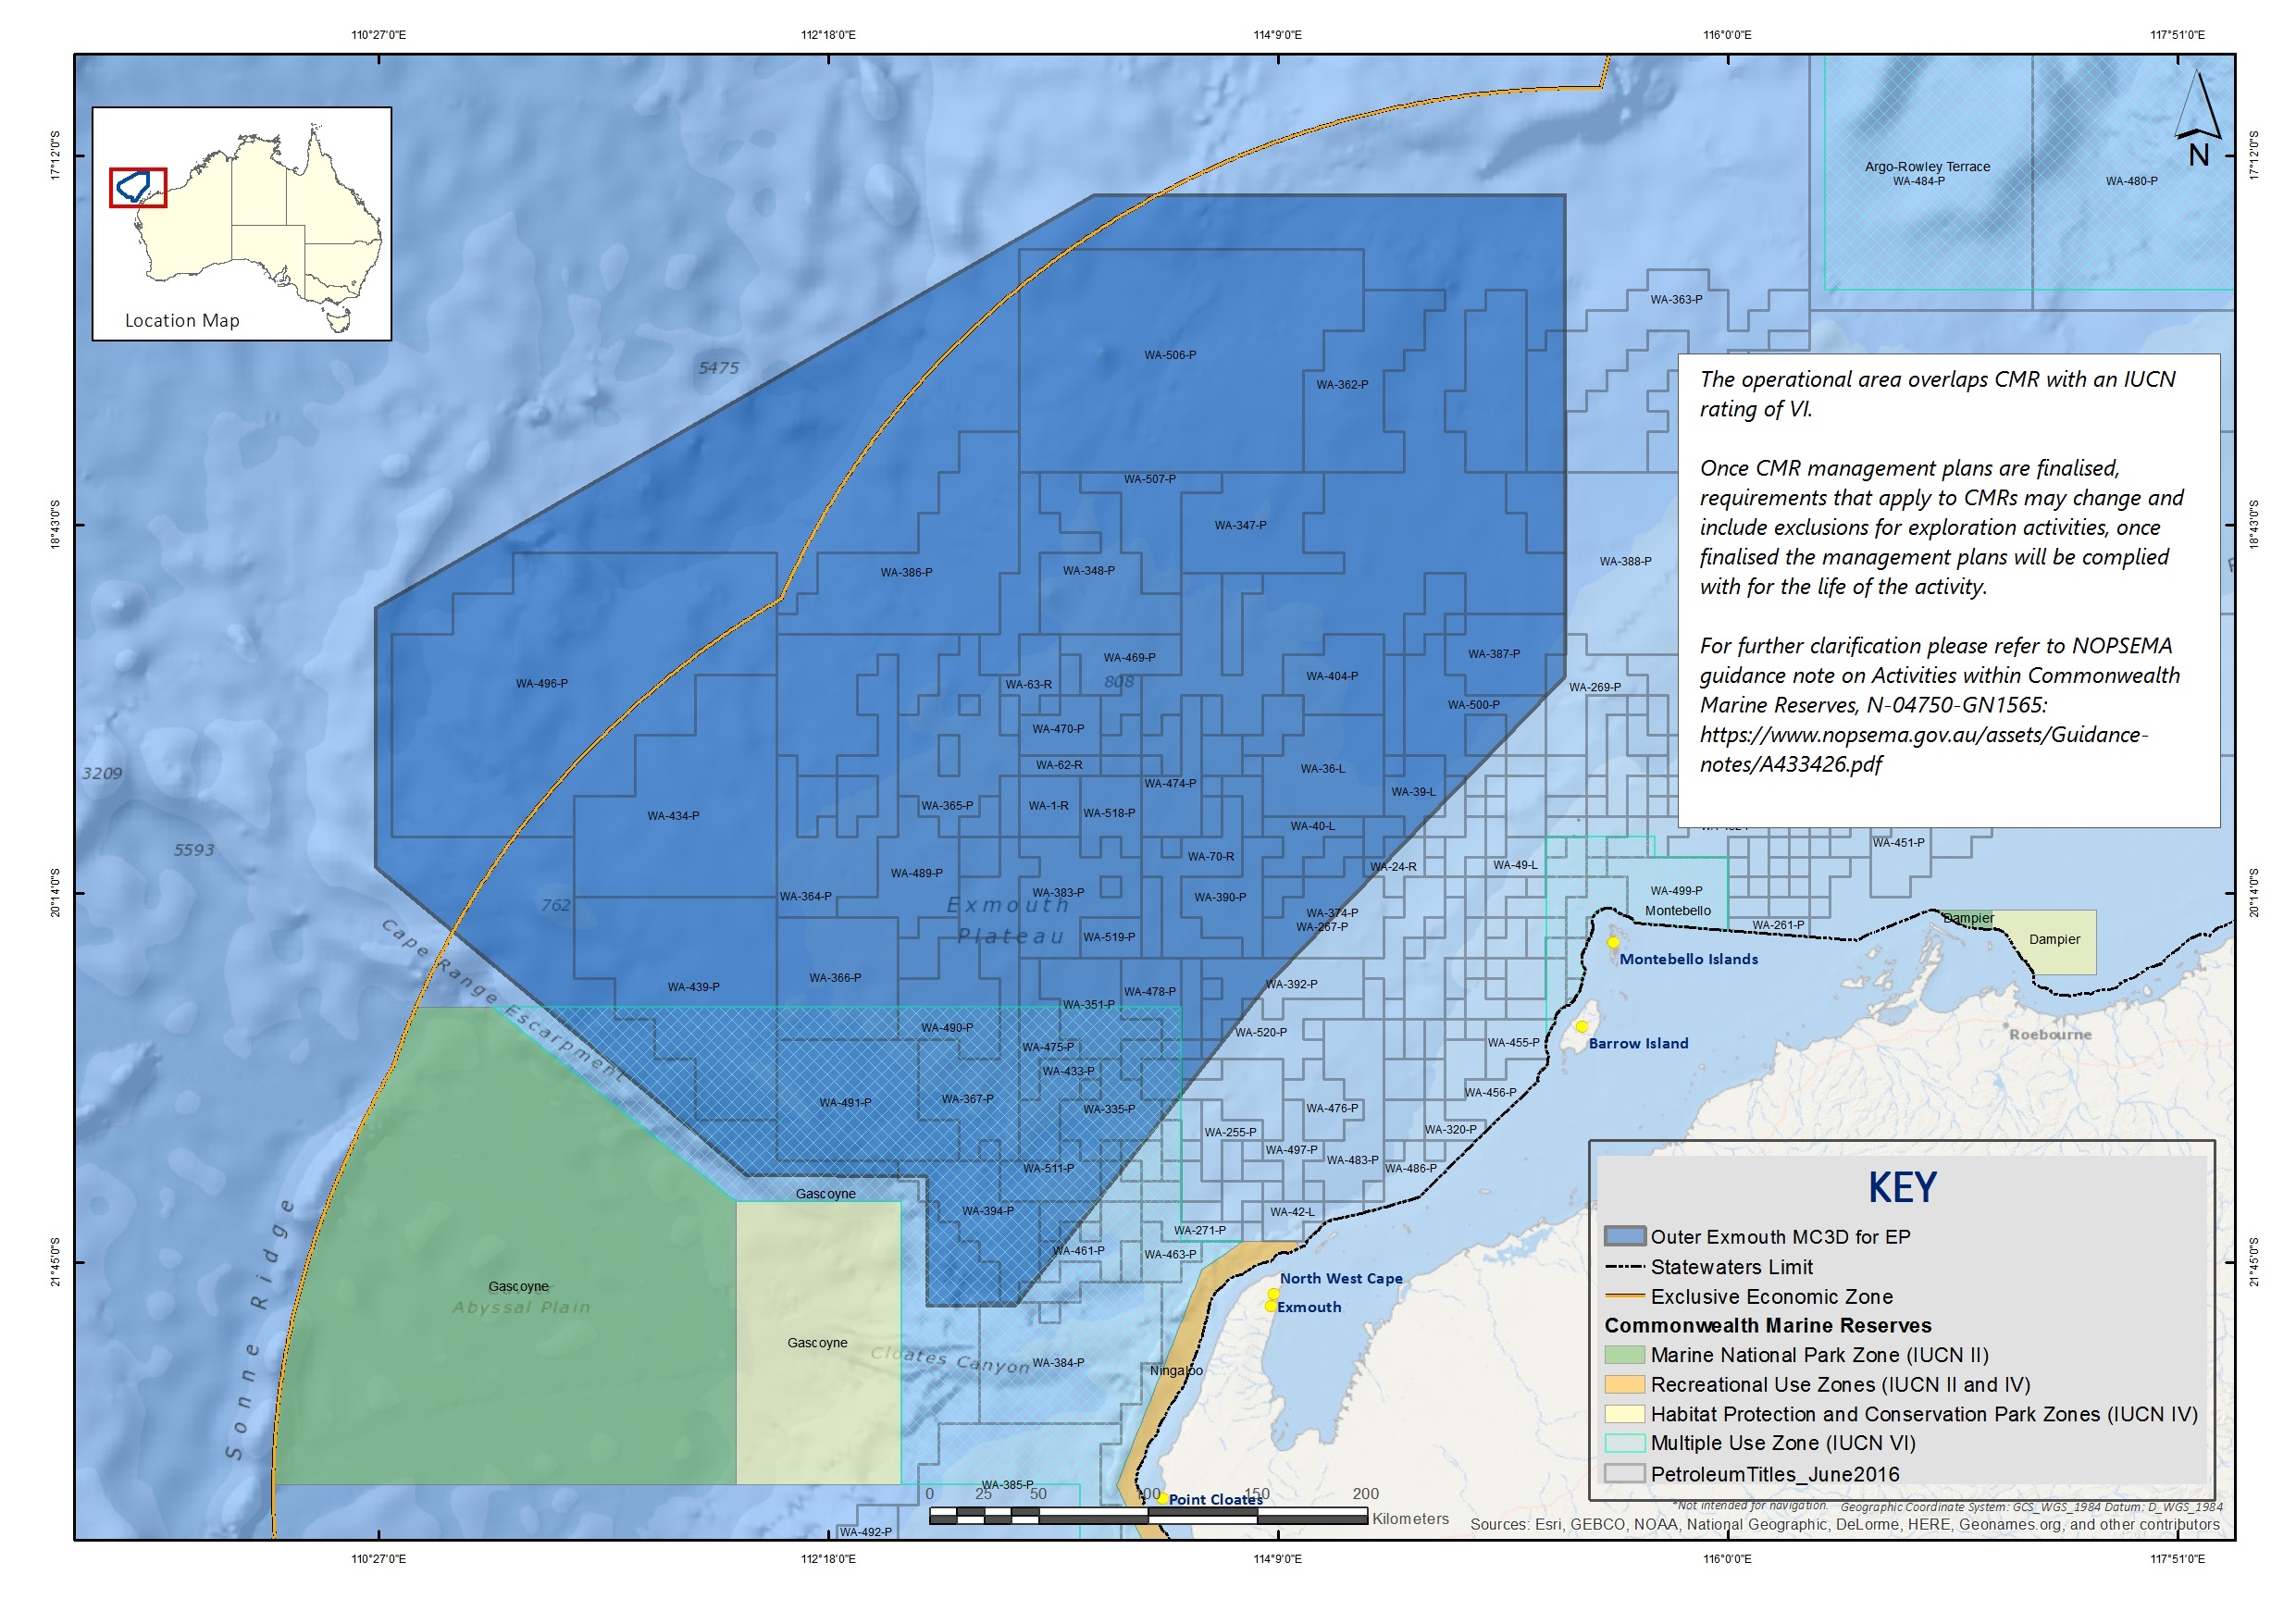 Location map - Activity: Outer Exmouth Multi Client 3D Marine Seismic Surveys (refer to description)